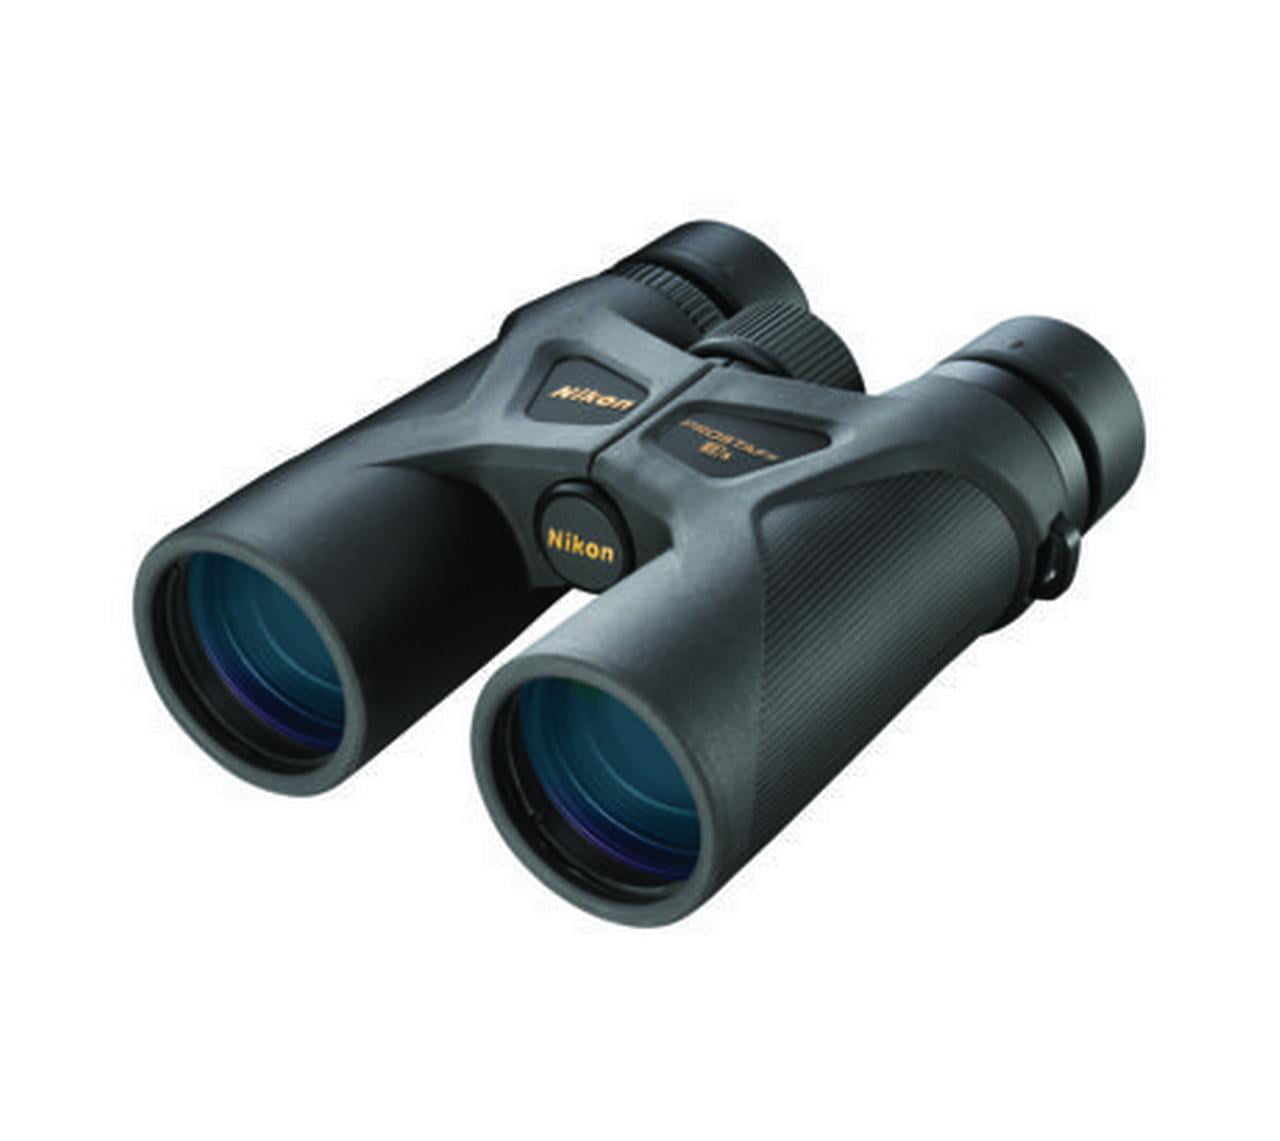 Nikon Prostaff 3S 10x42mm Binoculars, Black - 16032